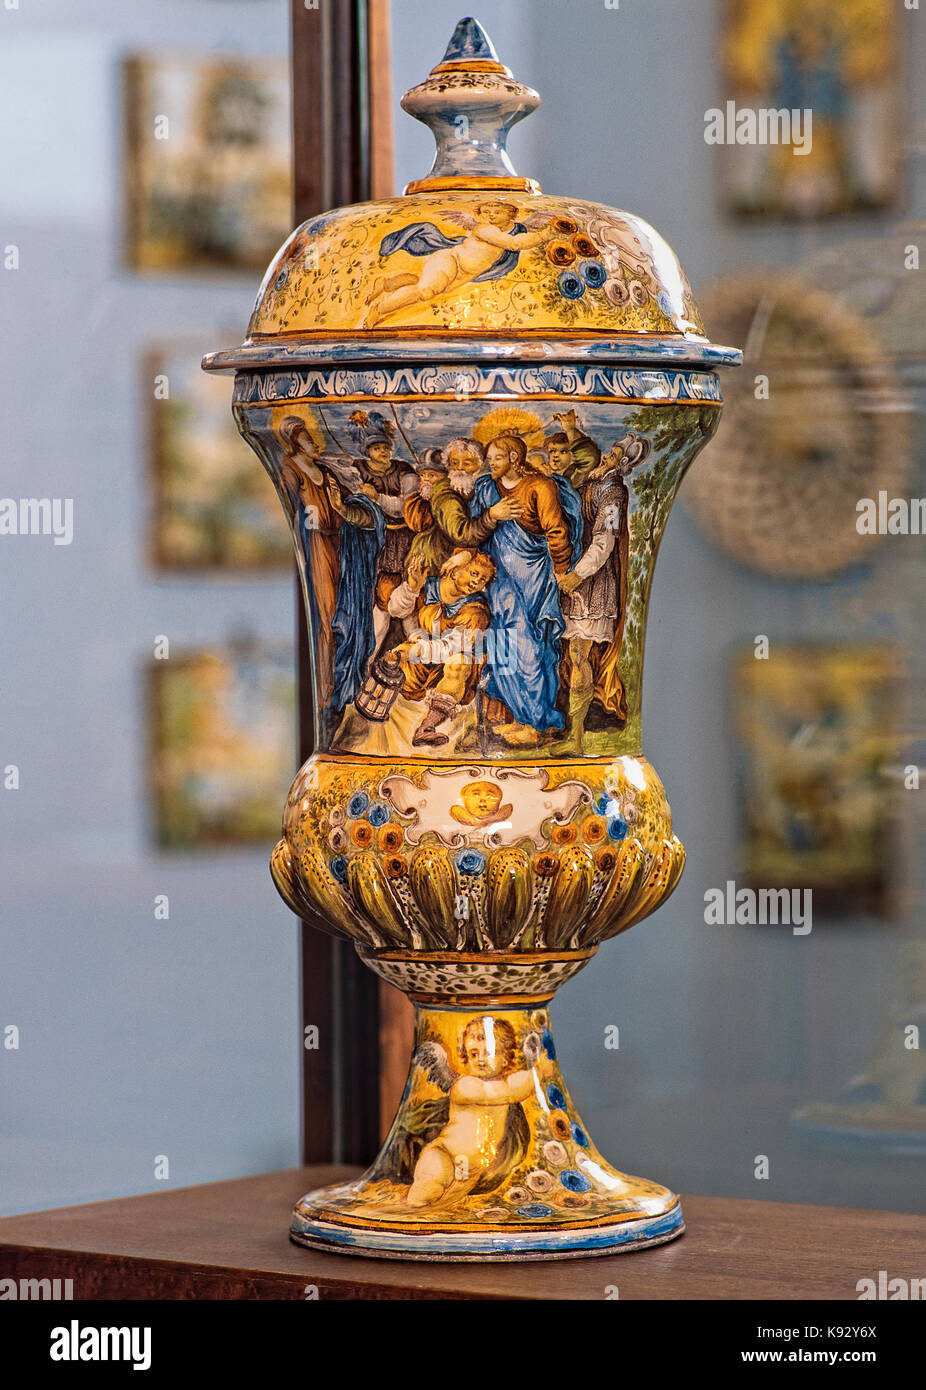 Italie Abruzzes Loreto Aprutino acerbo vase de céramique avec des scènes bibliques Banque D'Images